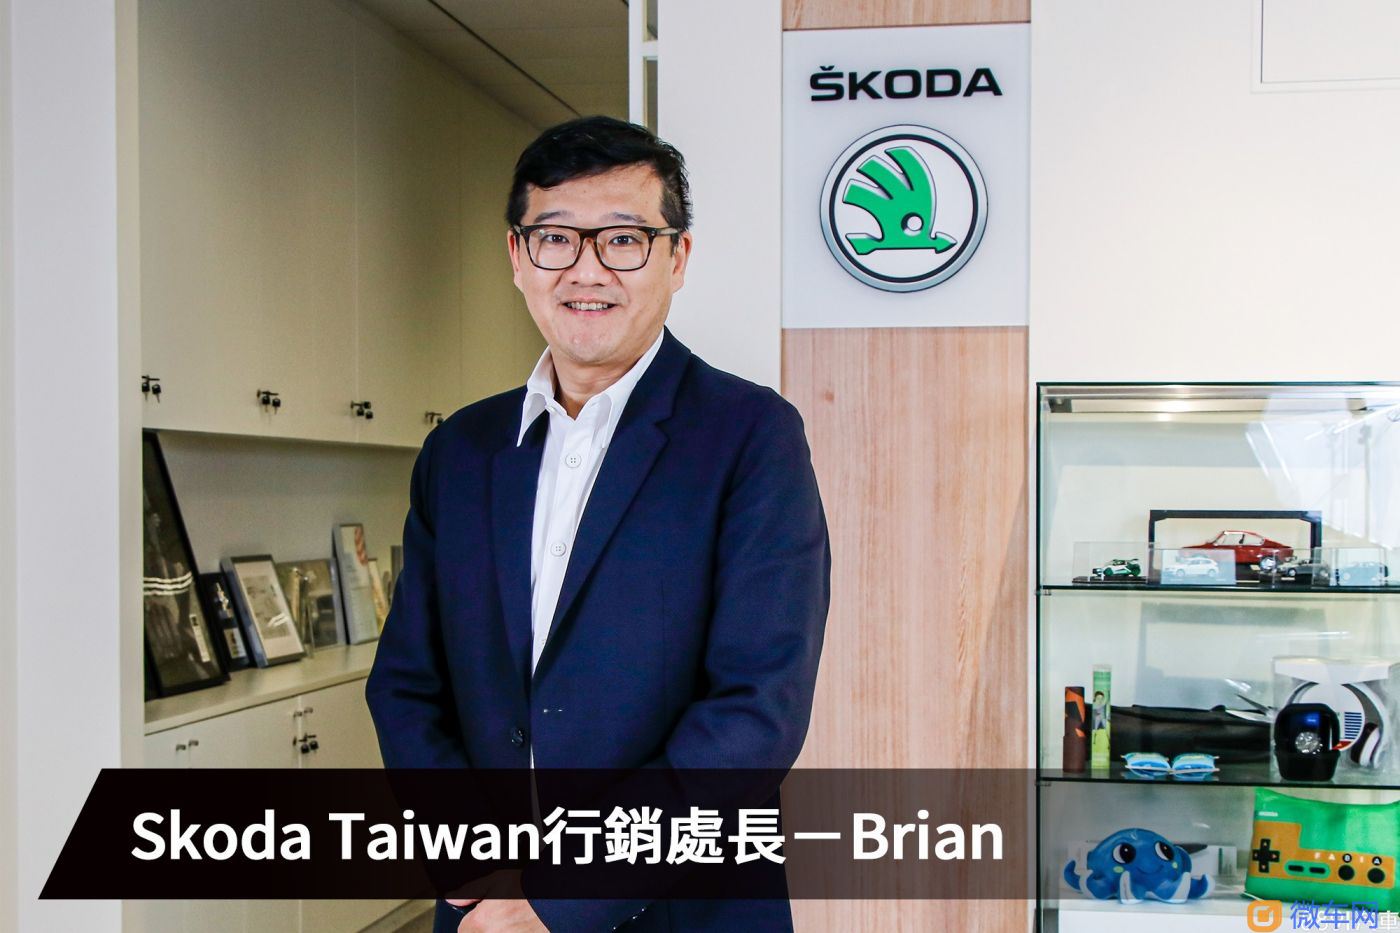 【品牌专访-Skoda】从小众品牌到人尽皆知 Skoda Taiwan持续茁壮的下一步